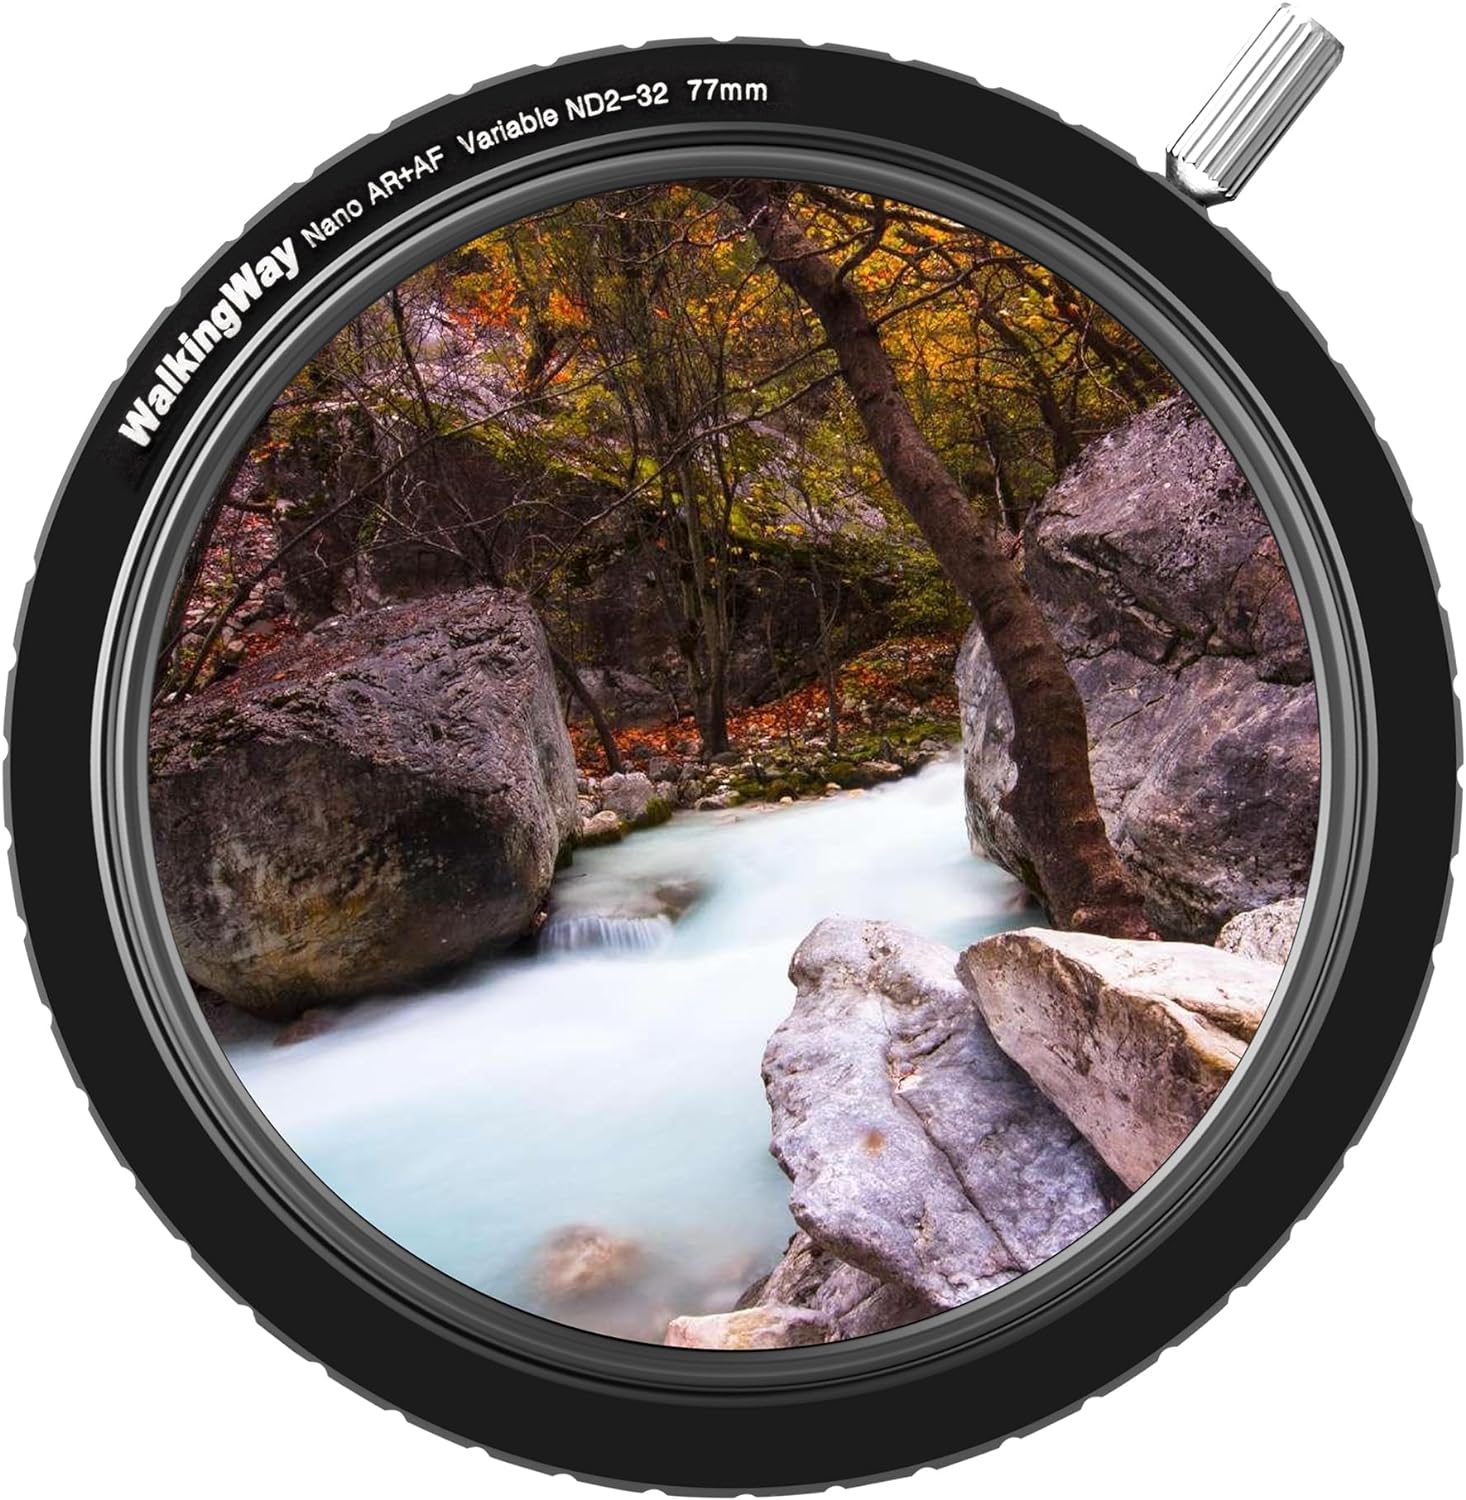 WalkingWay 82mm True Color ND Filter Variable ND2-32 (1-5 Stops) Neutral Density Filter Adjustable ND4 ND8 ND16 Filter VND 0.3-1.5 for Camera Lens